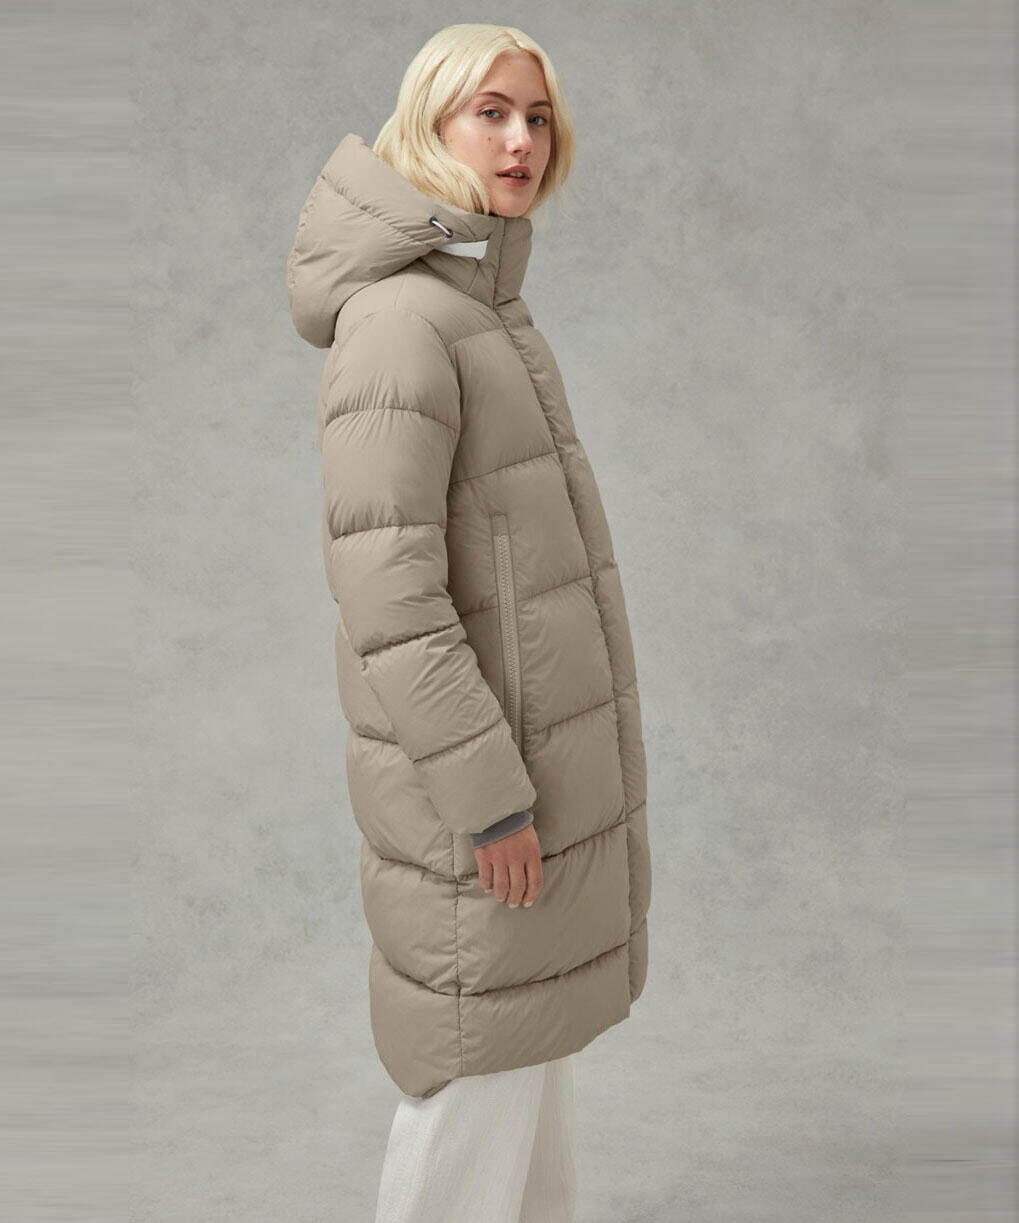 レディースダウンジャケット21 22 人気の高級アウターブランドはじめ 軽量で暖かい 新作 ファッションプレス